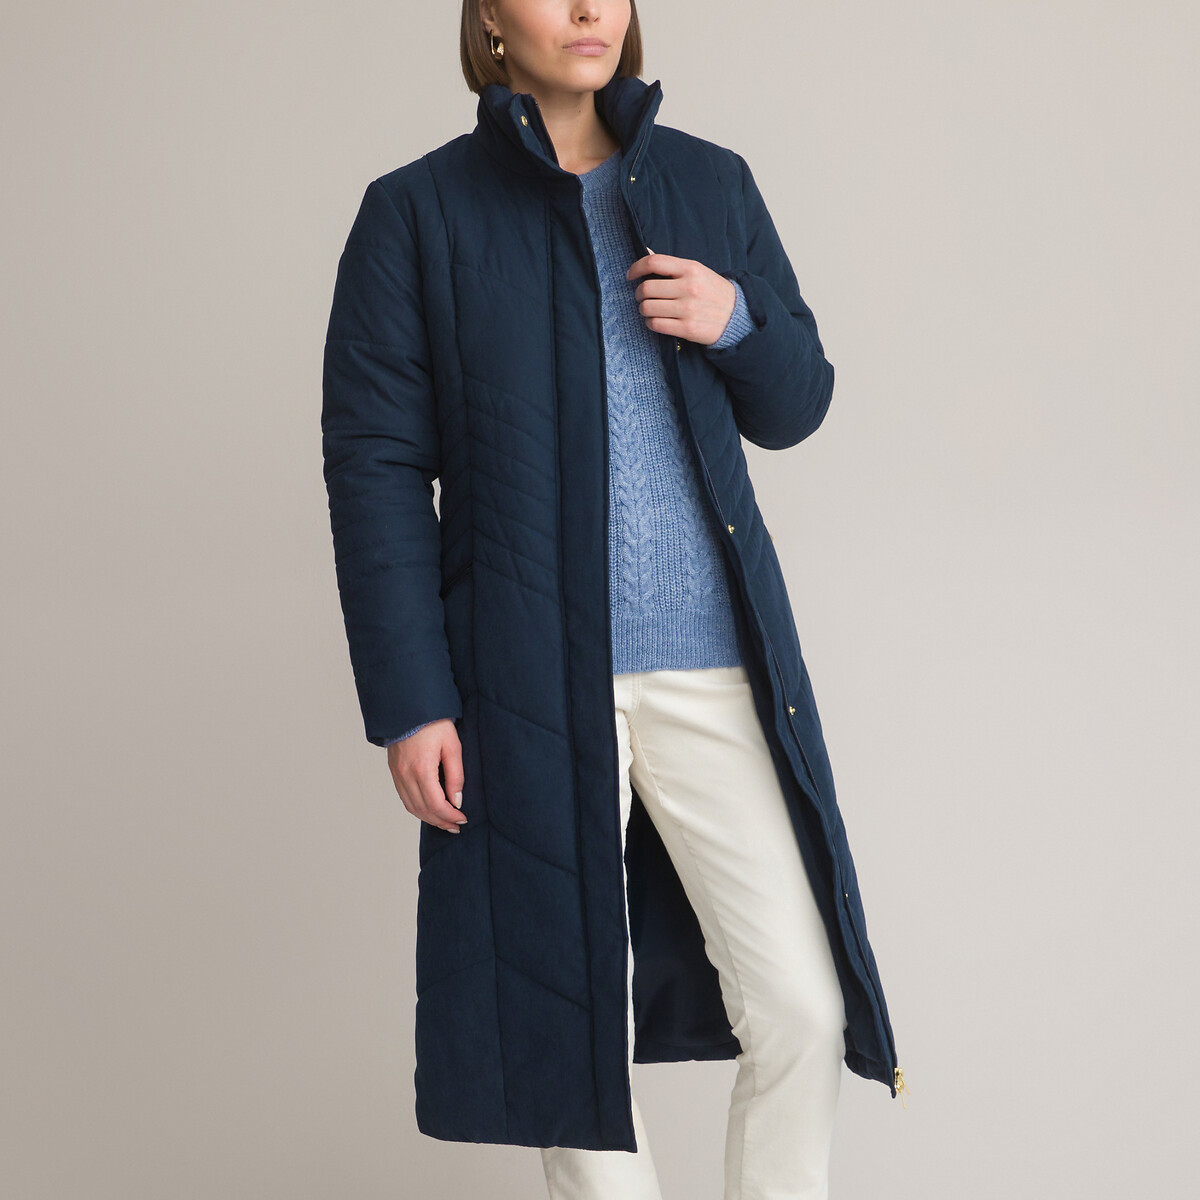 Куртка Стеганая длинная застежка на молнию 36 (FR) - 42 (RUS) синий LaRedoute, размер 36 (FR) - 42 (RUS)